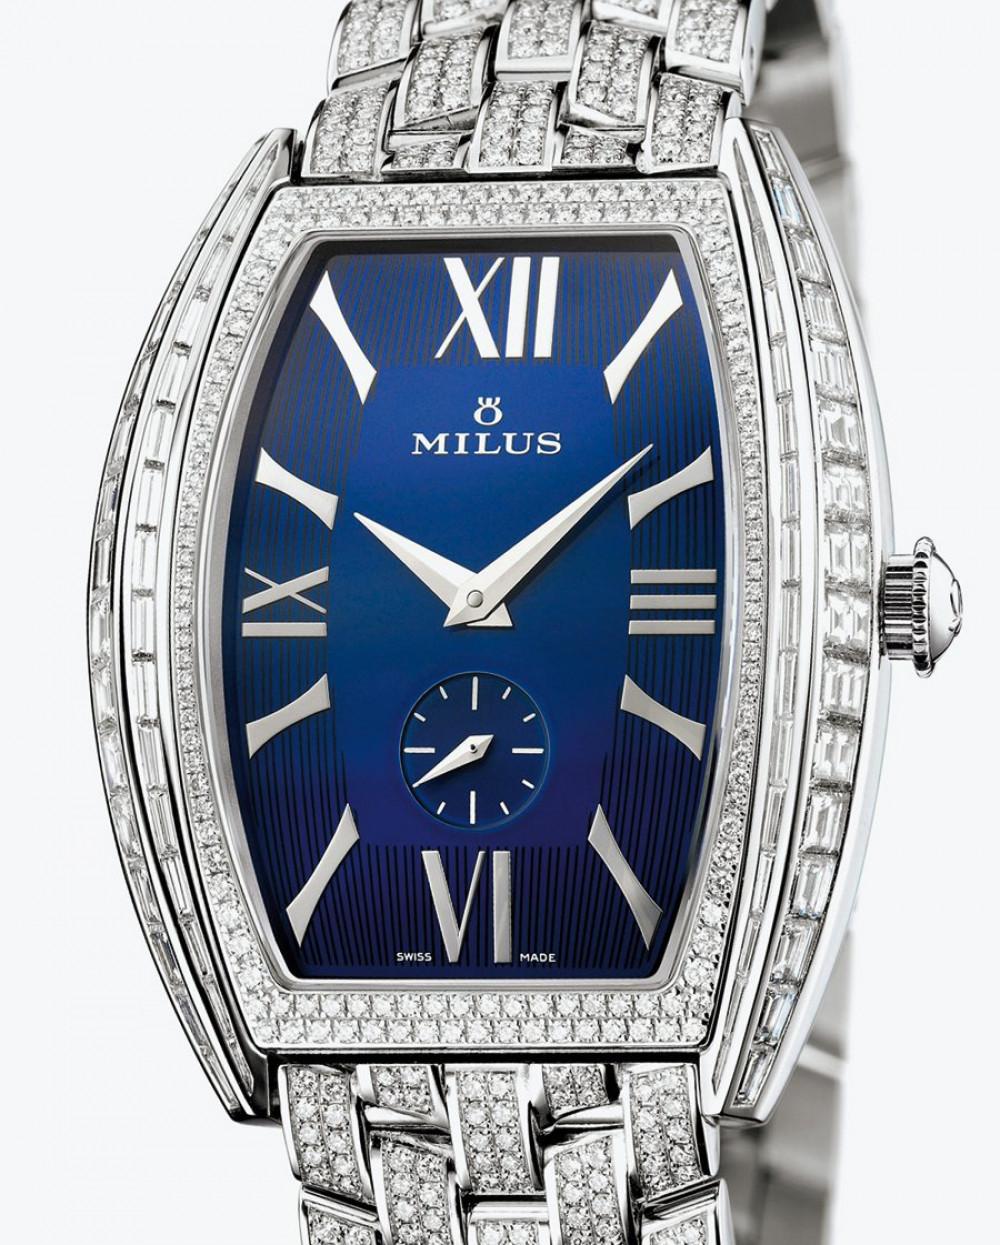 Zegarek firmy Milus, model Agenios Haute Joaillerie